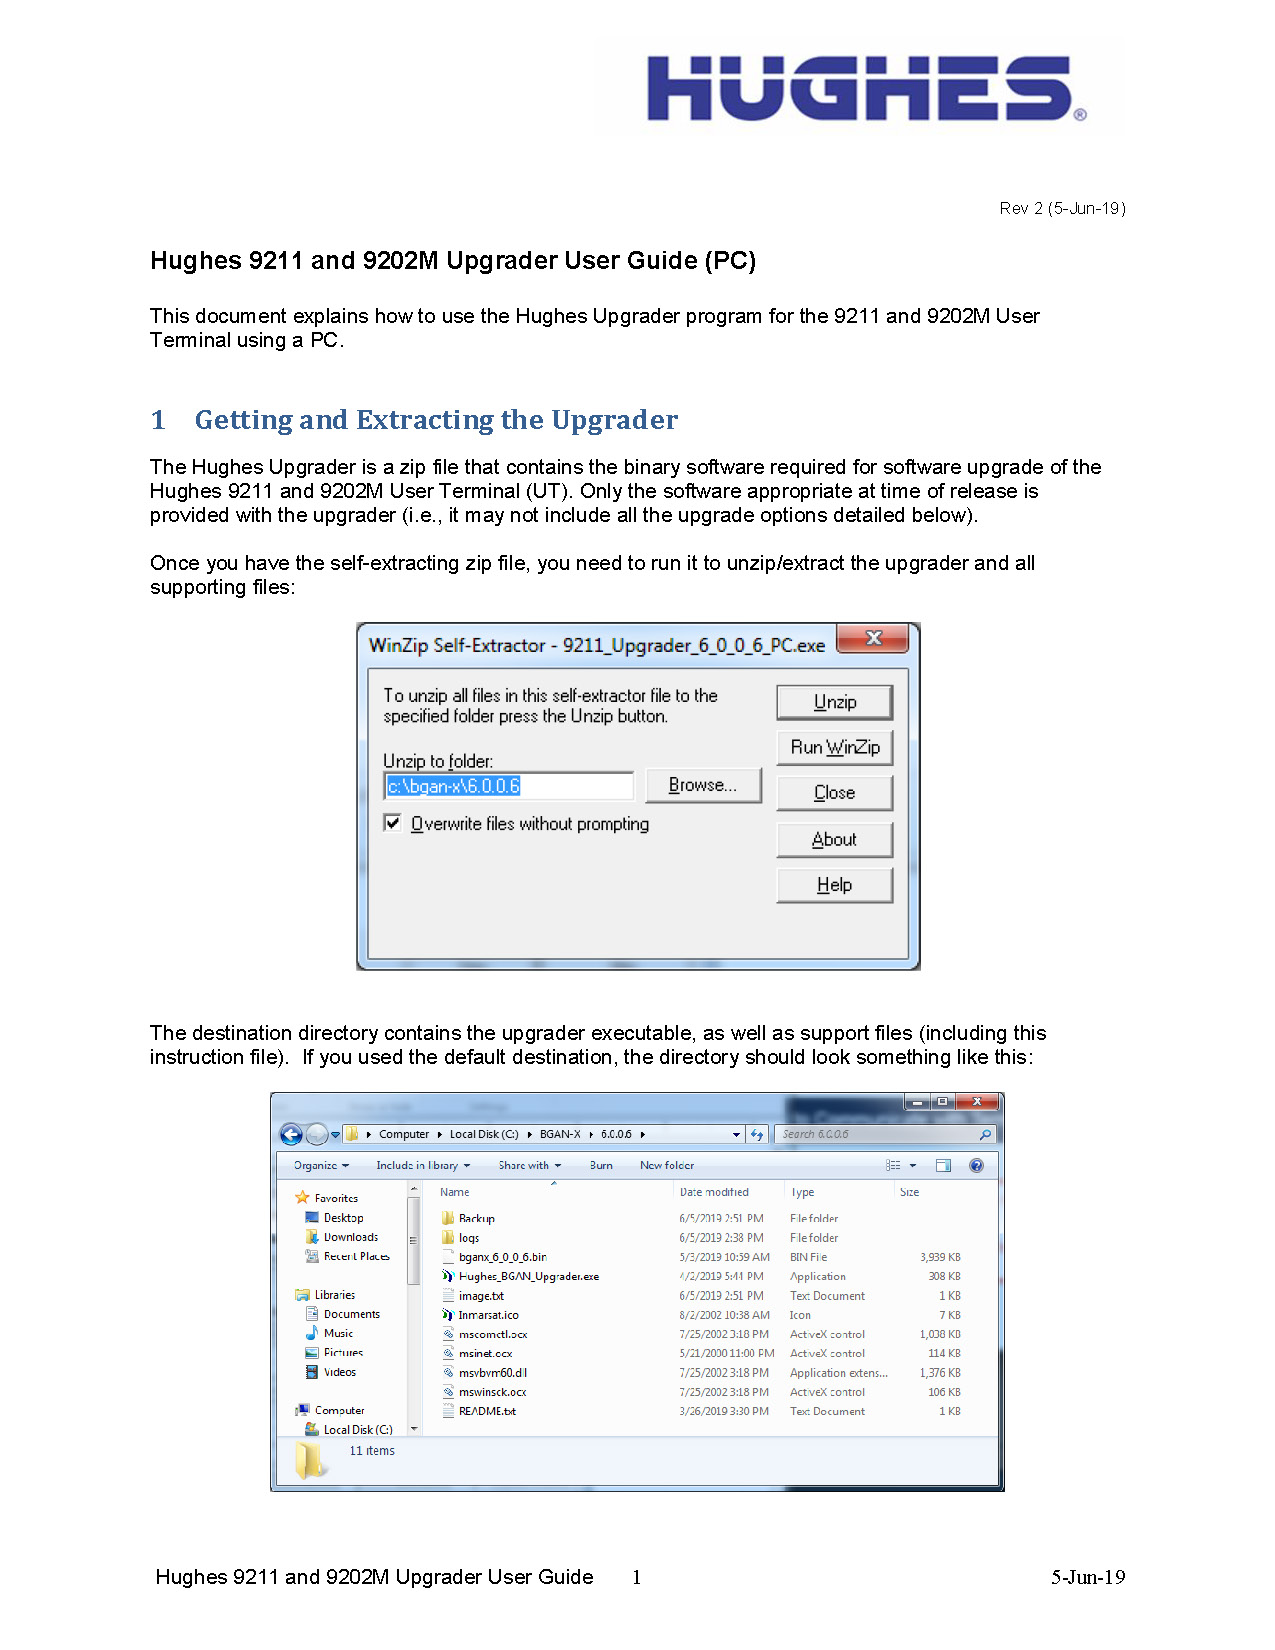 Hughes_9211_Upgrader_User_Instructions_PC_v2.pdf_Page_1.jpg